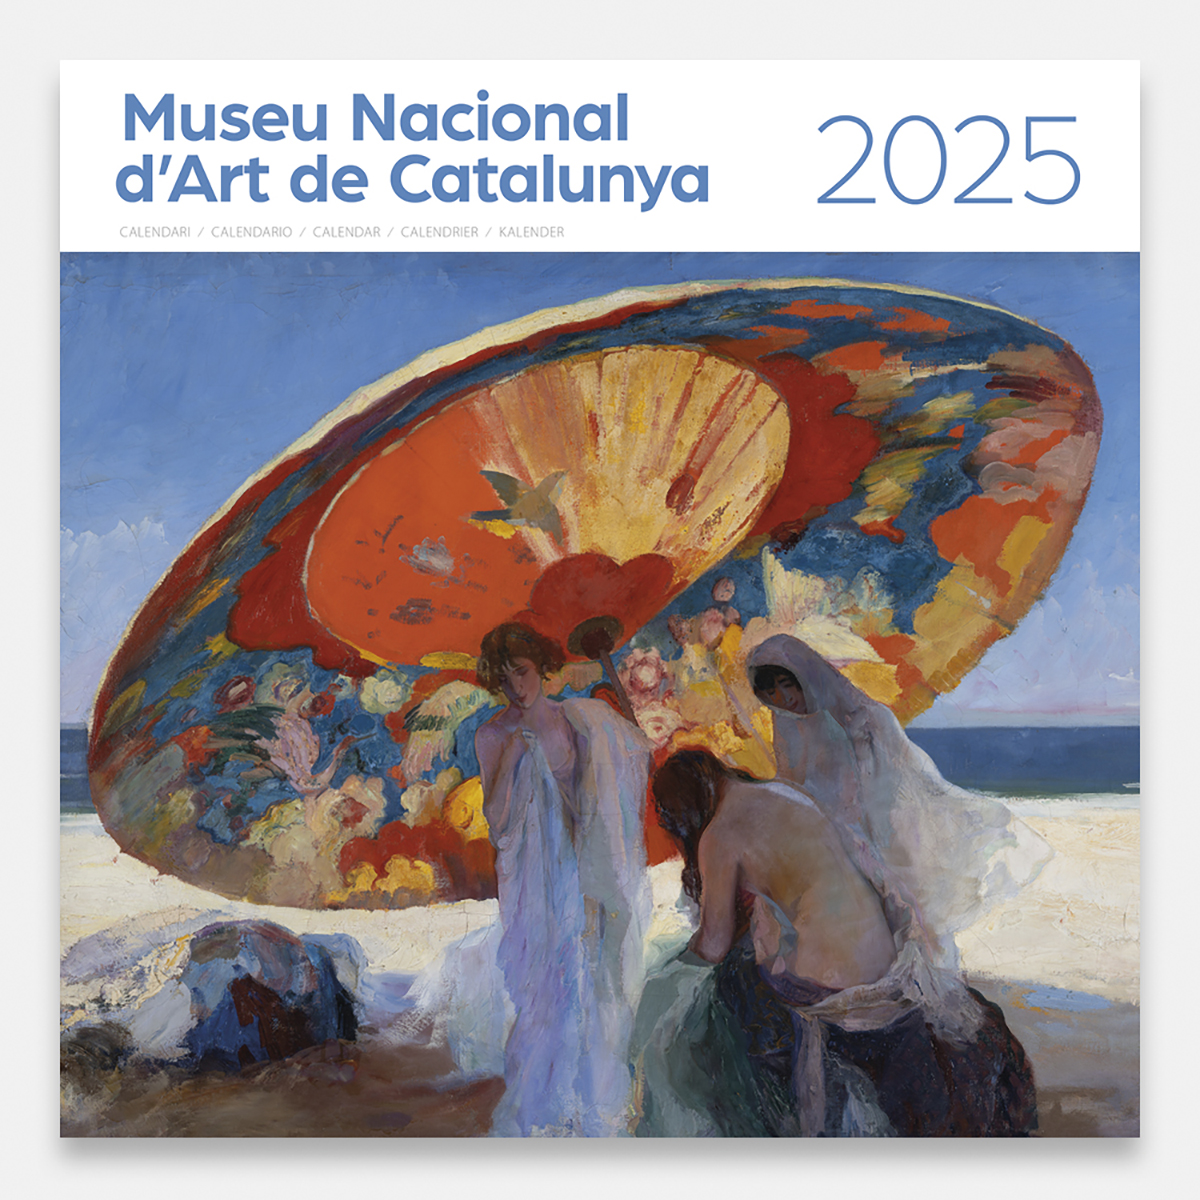 Calendrier 2025 Museu Nacional d’Art de Catalunya 25mnacg calendario pared 2025 museu nacional art catalunya